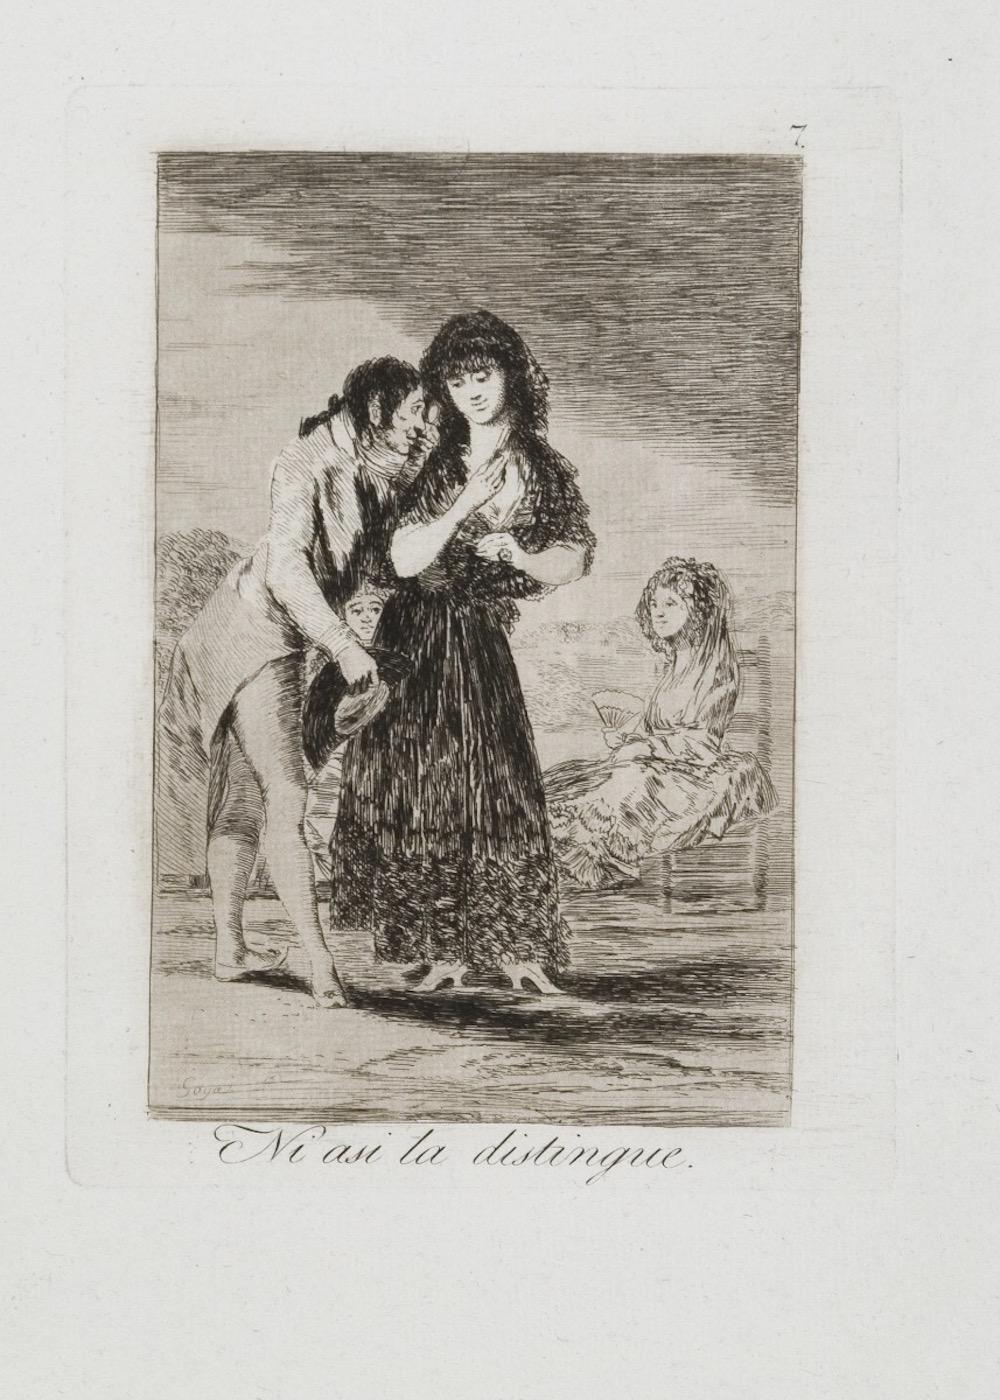 "Ni asi la Distingue" est une aquatinte originale réalisée par Francisco Goya en 1799, d'après...  Série Los Caprichos, planche 7, première édition.

Rare et en très bon état. 

 Les Caprichos
Mis en vente le 6 février 1799, à la fin du dernier